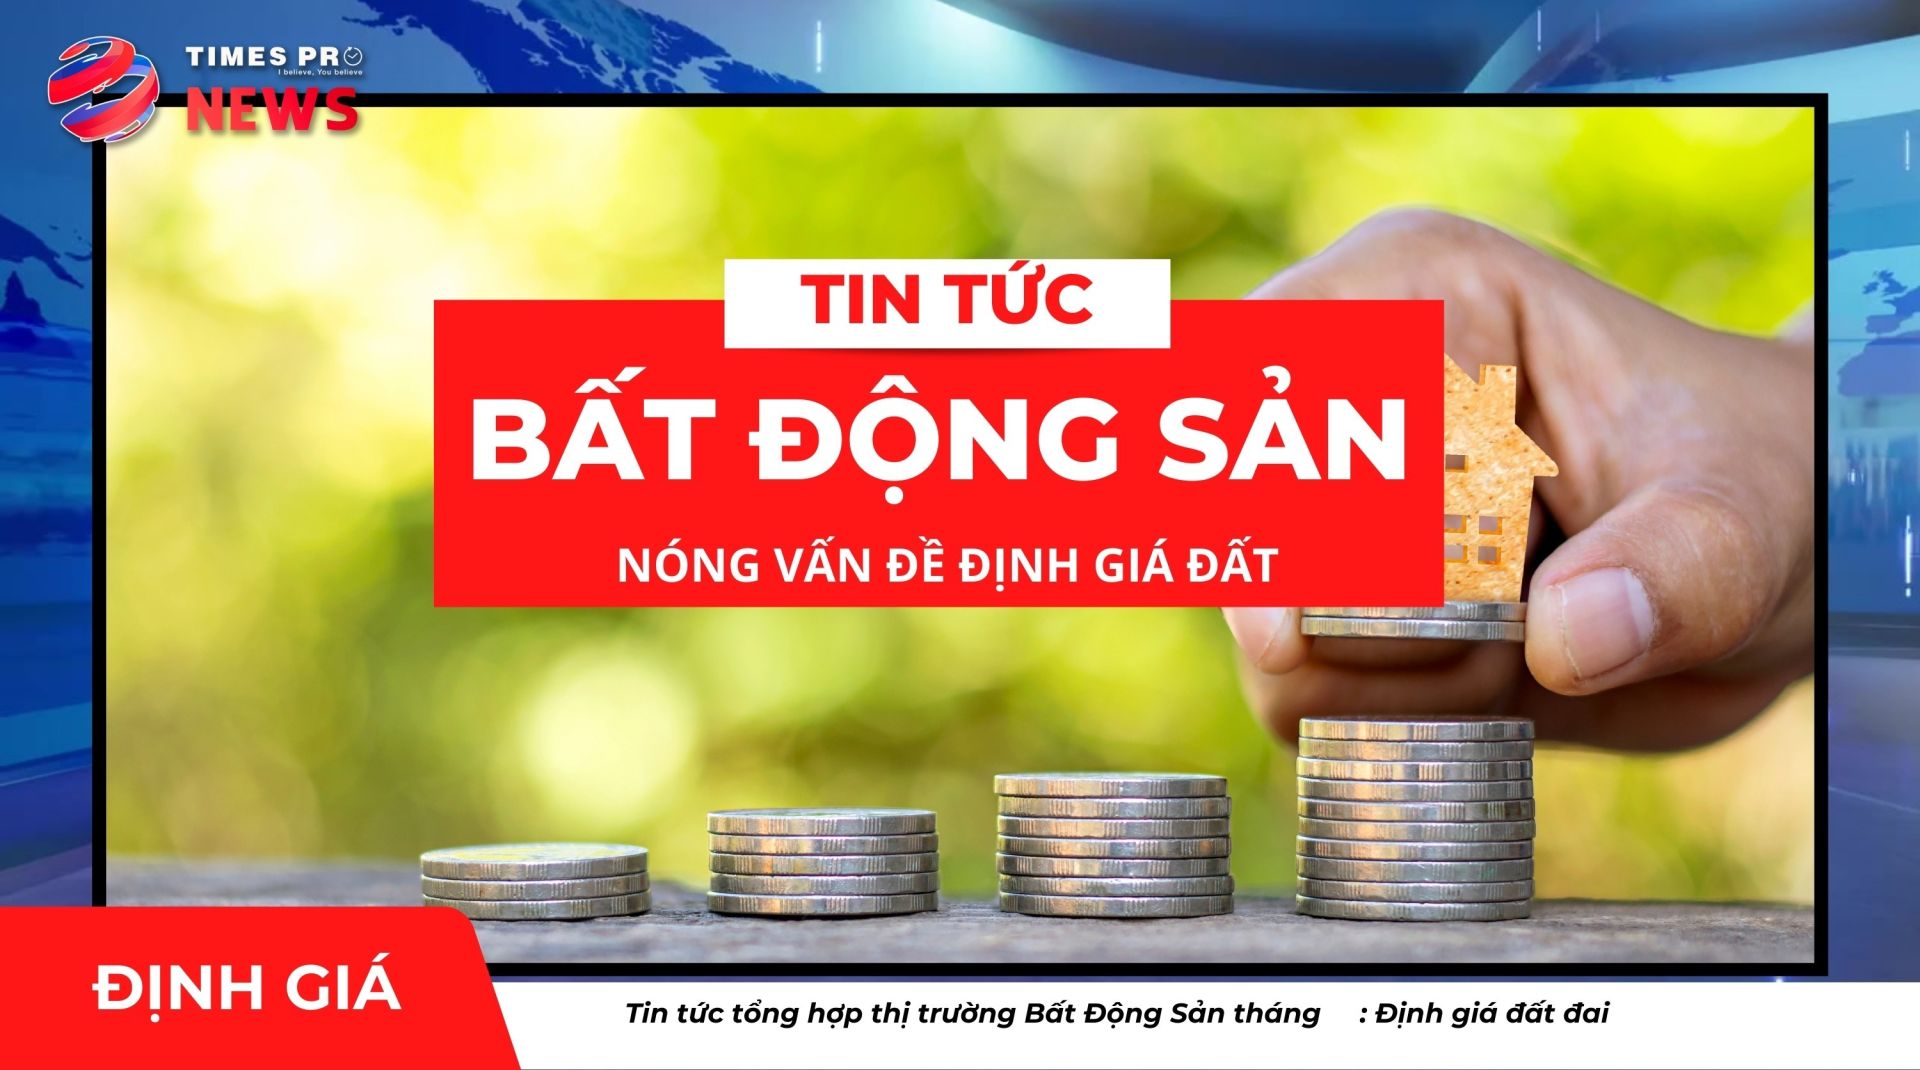 tin-tuc-bat-dong-san-times-pro-nong-van-de-dinh-gia-dat